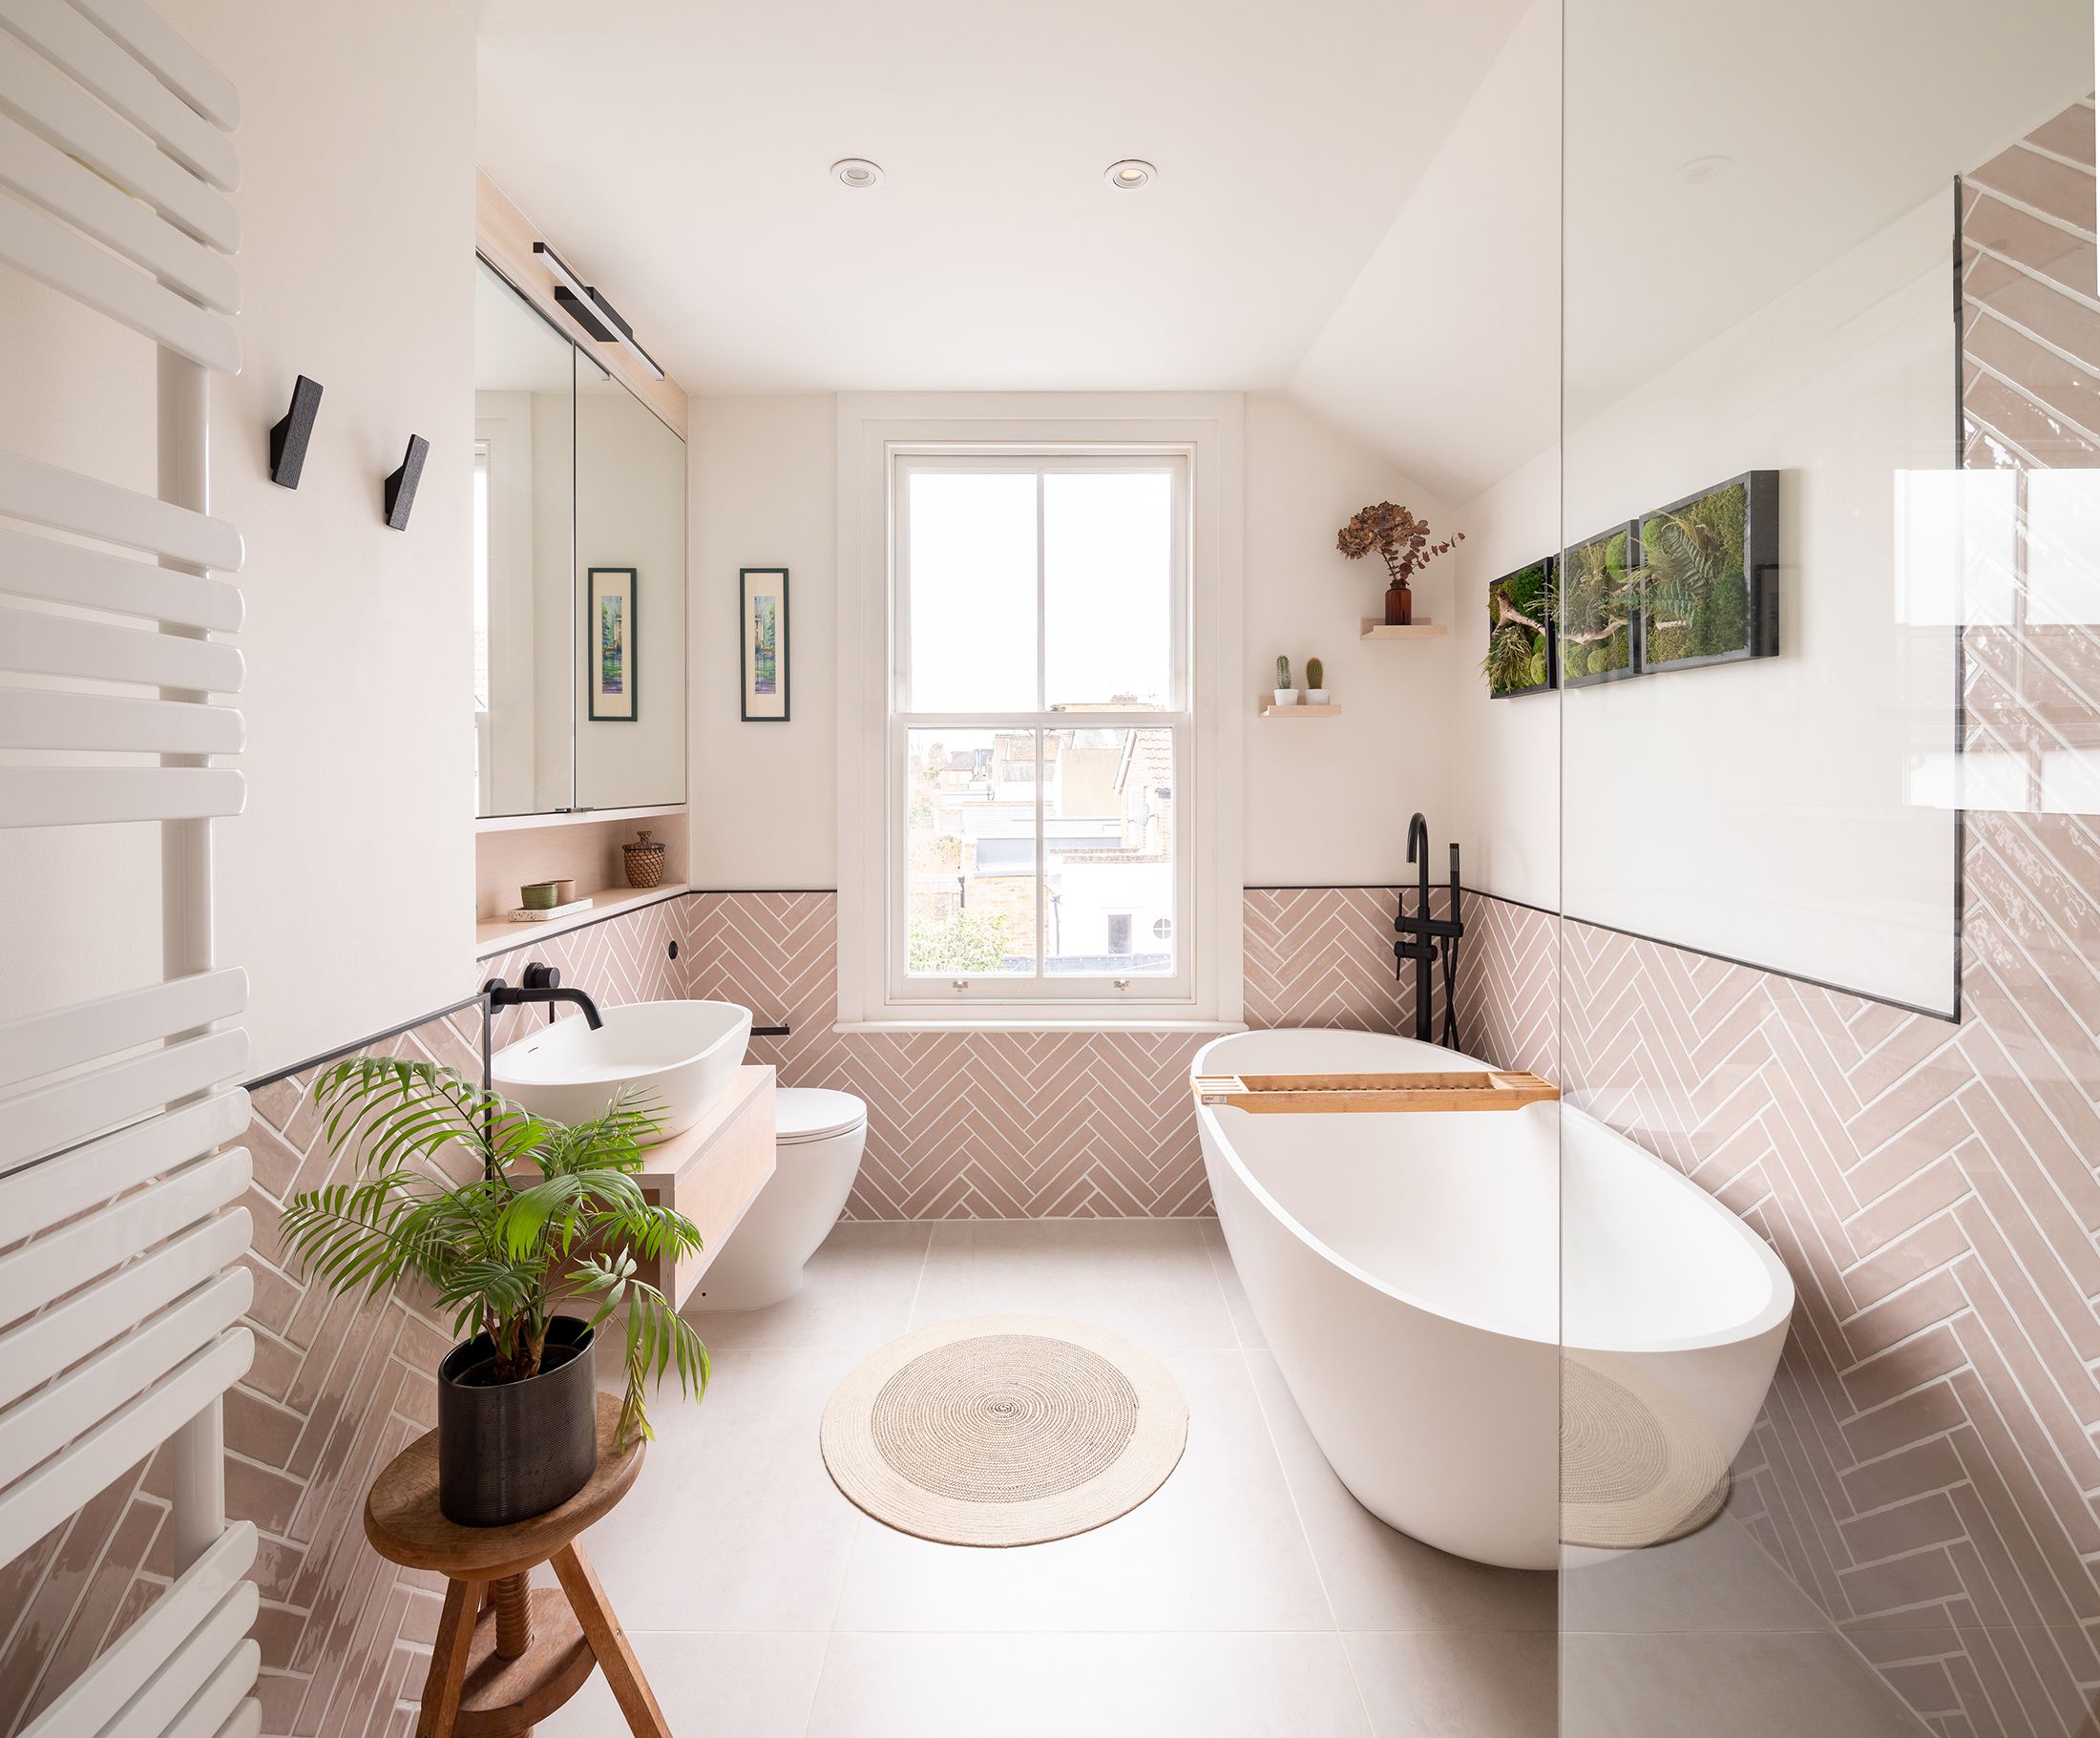 Cómo decorar un baño: 9 ideas para baños modernos y elegantes